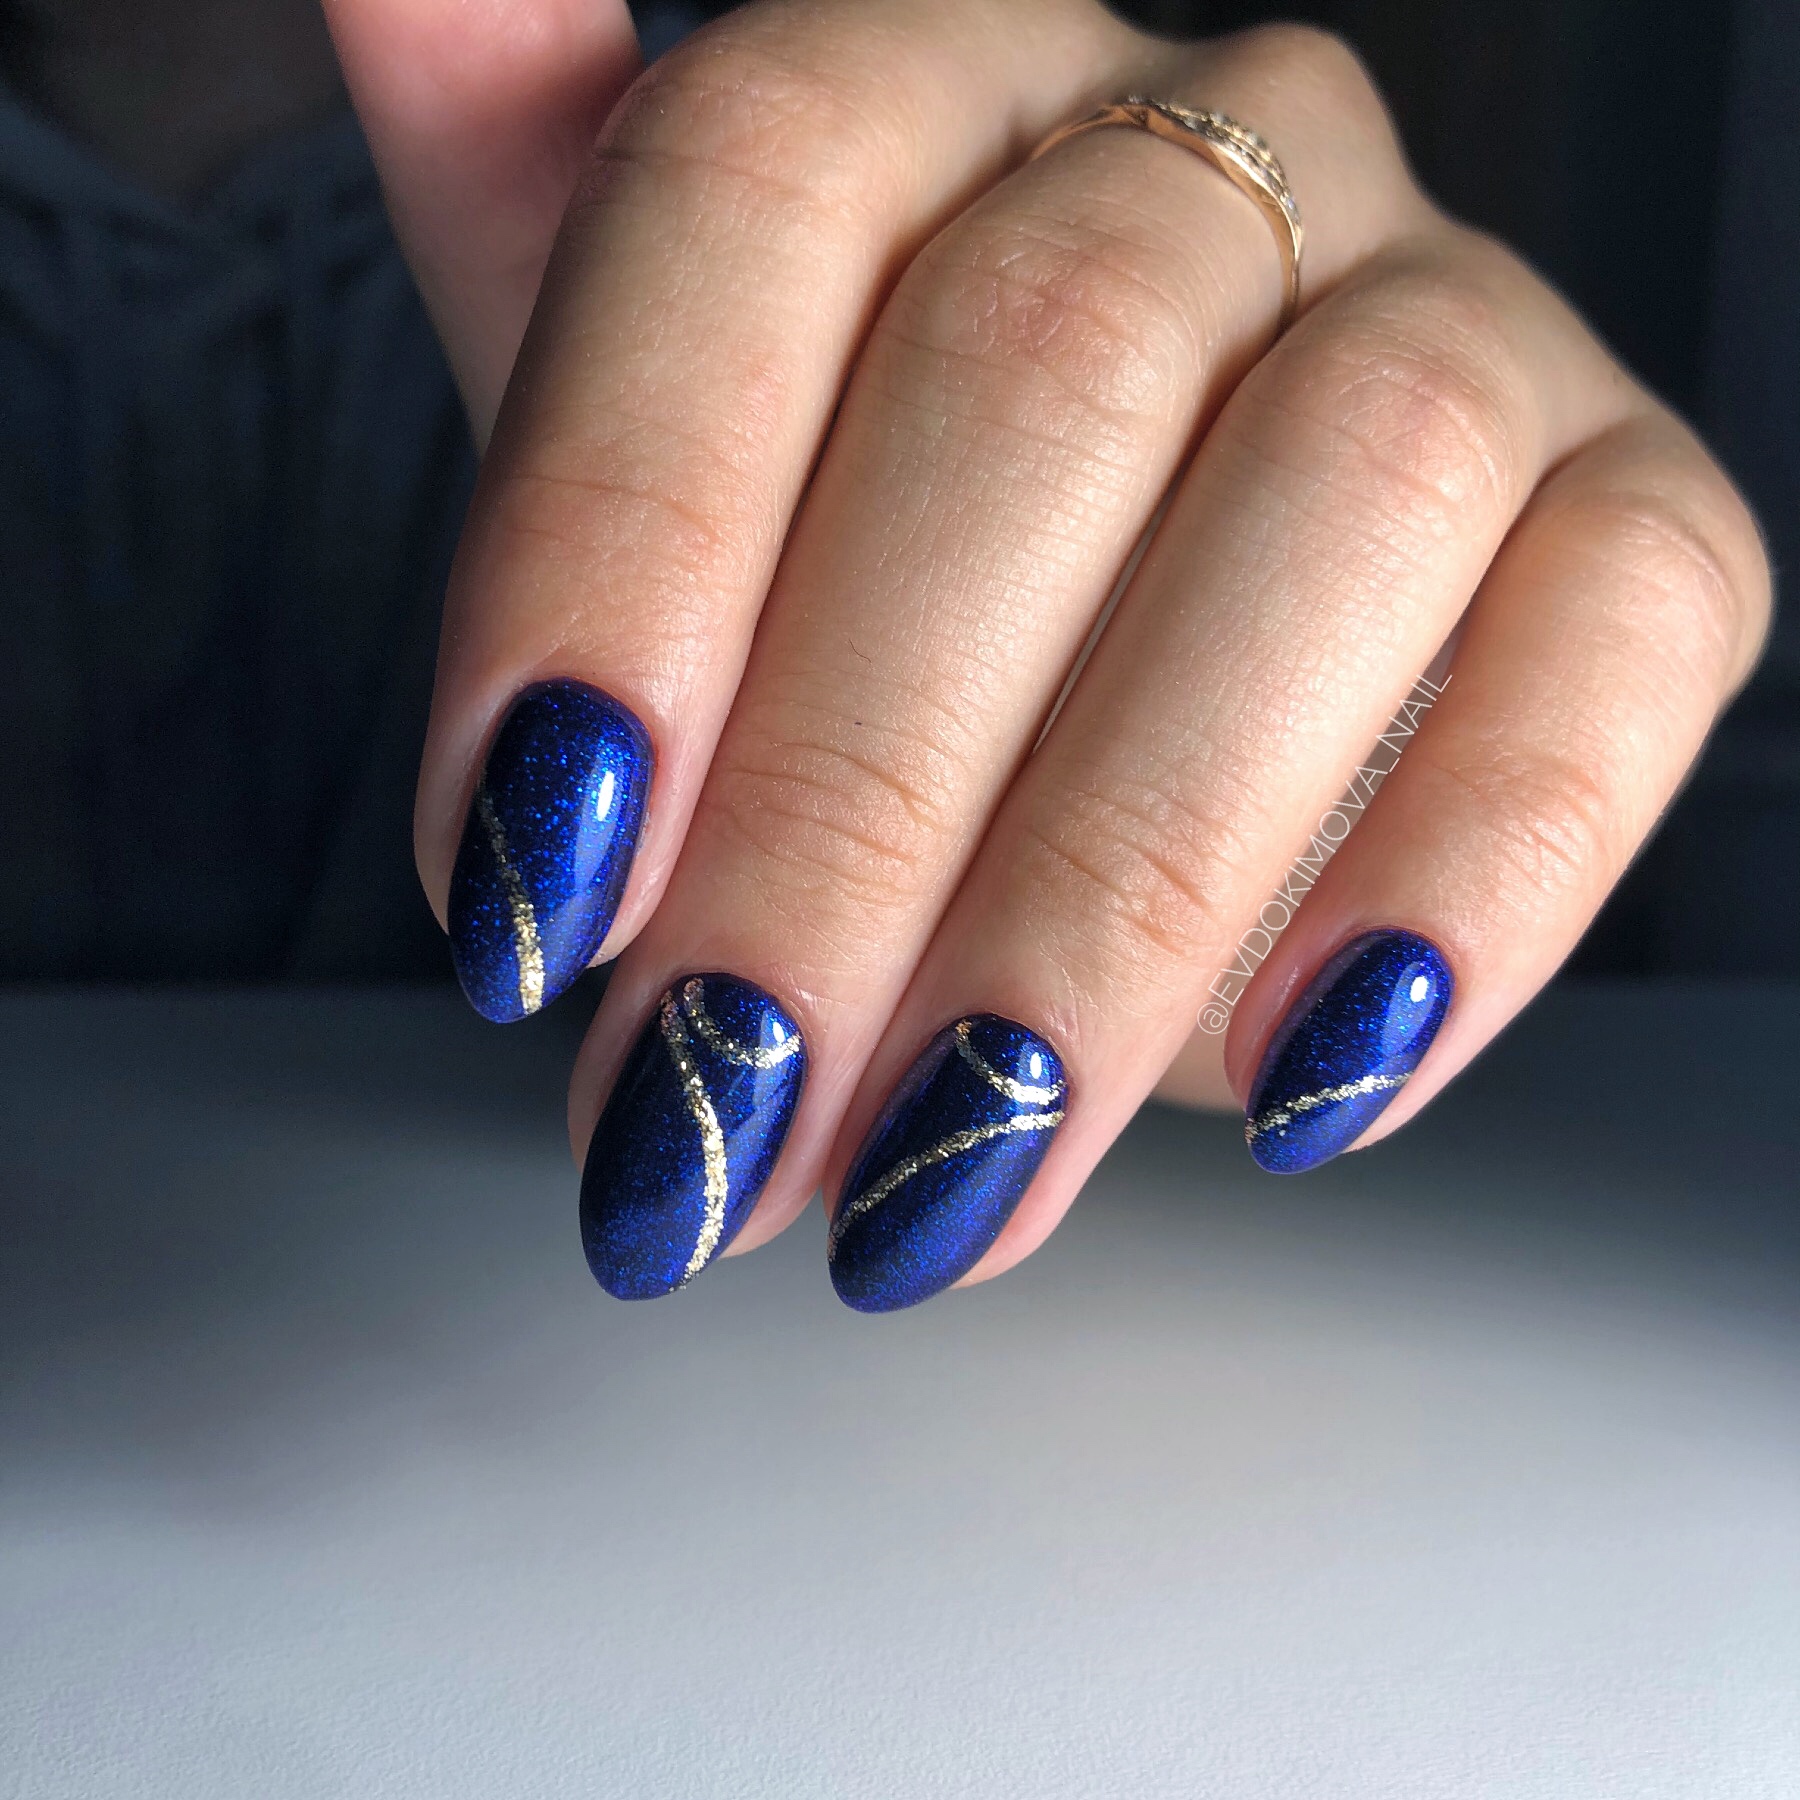 Маникюр с серебряными полосками в синем цвете на короткие ногти.